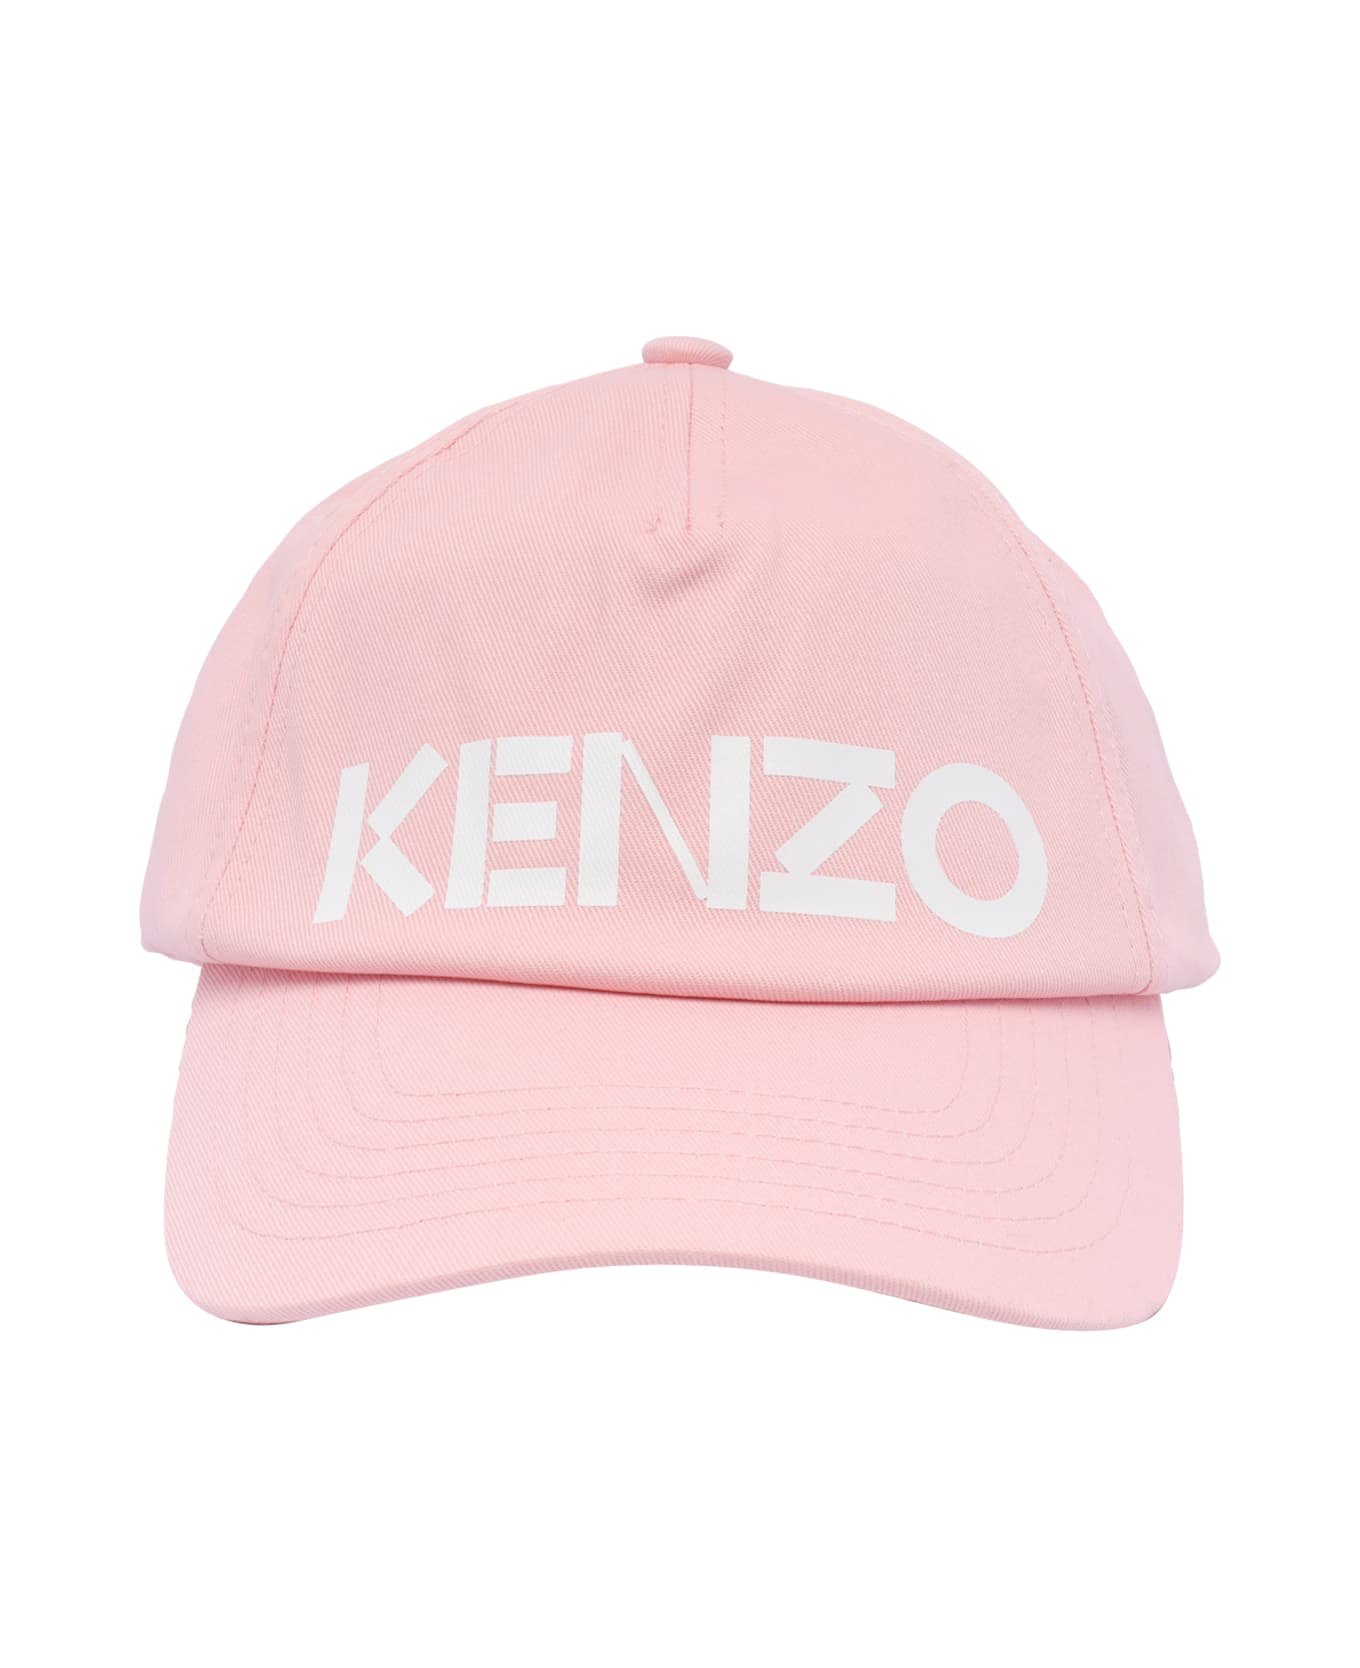 Kenzo Logo Baseball Cap - Pink